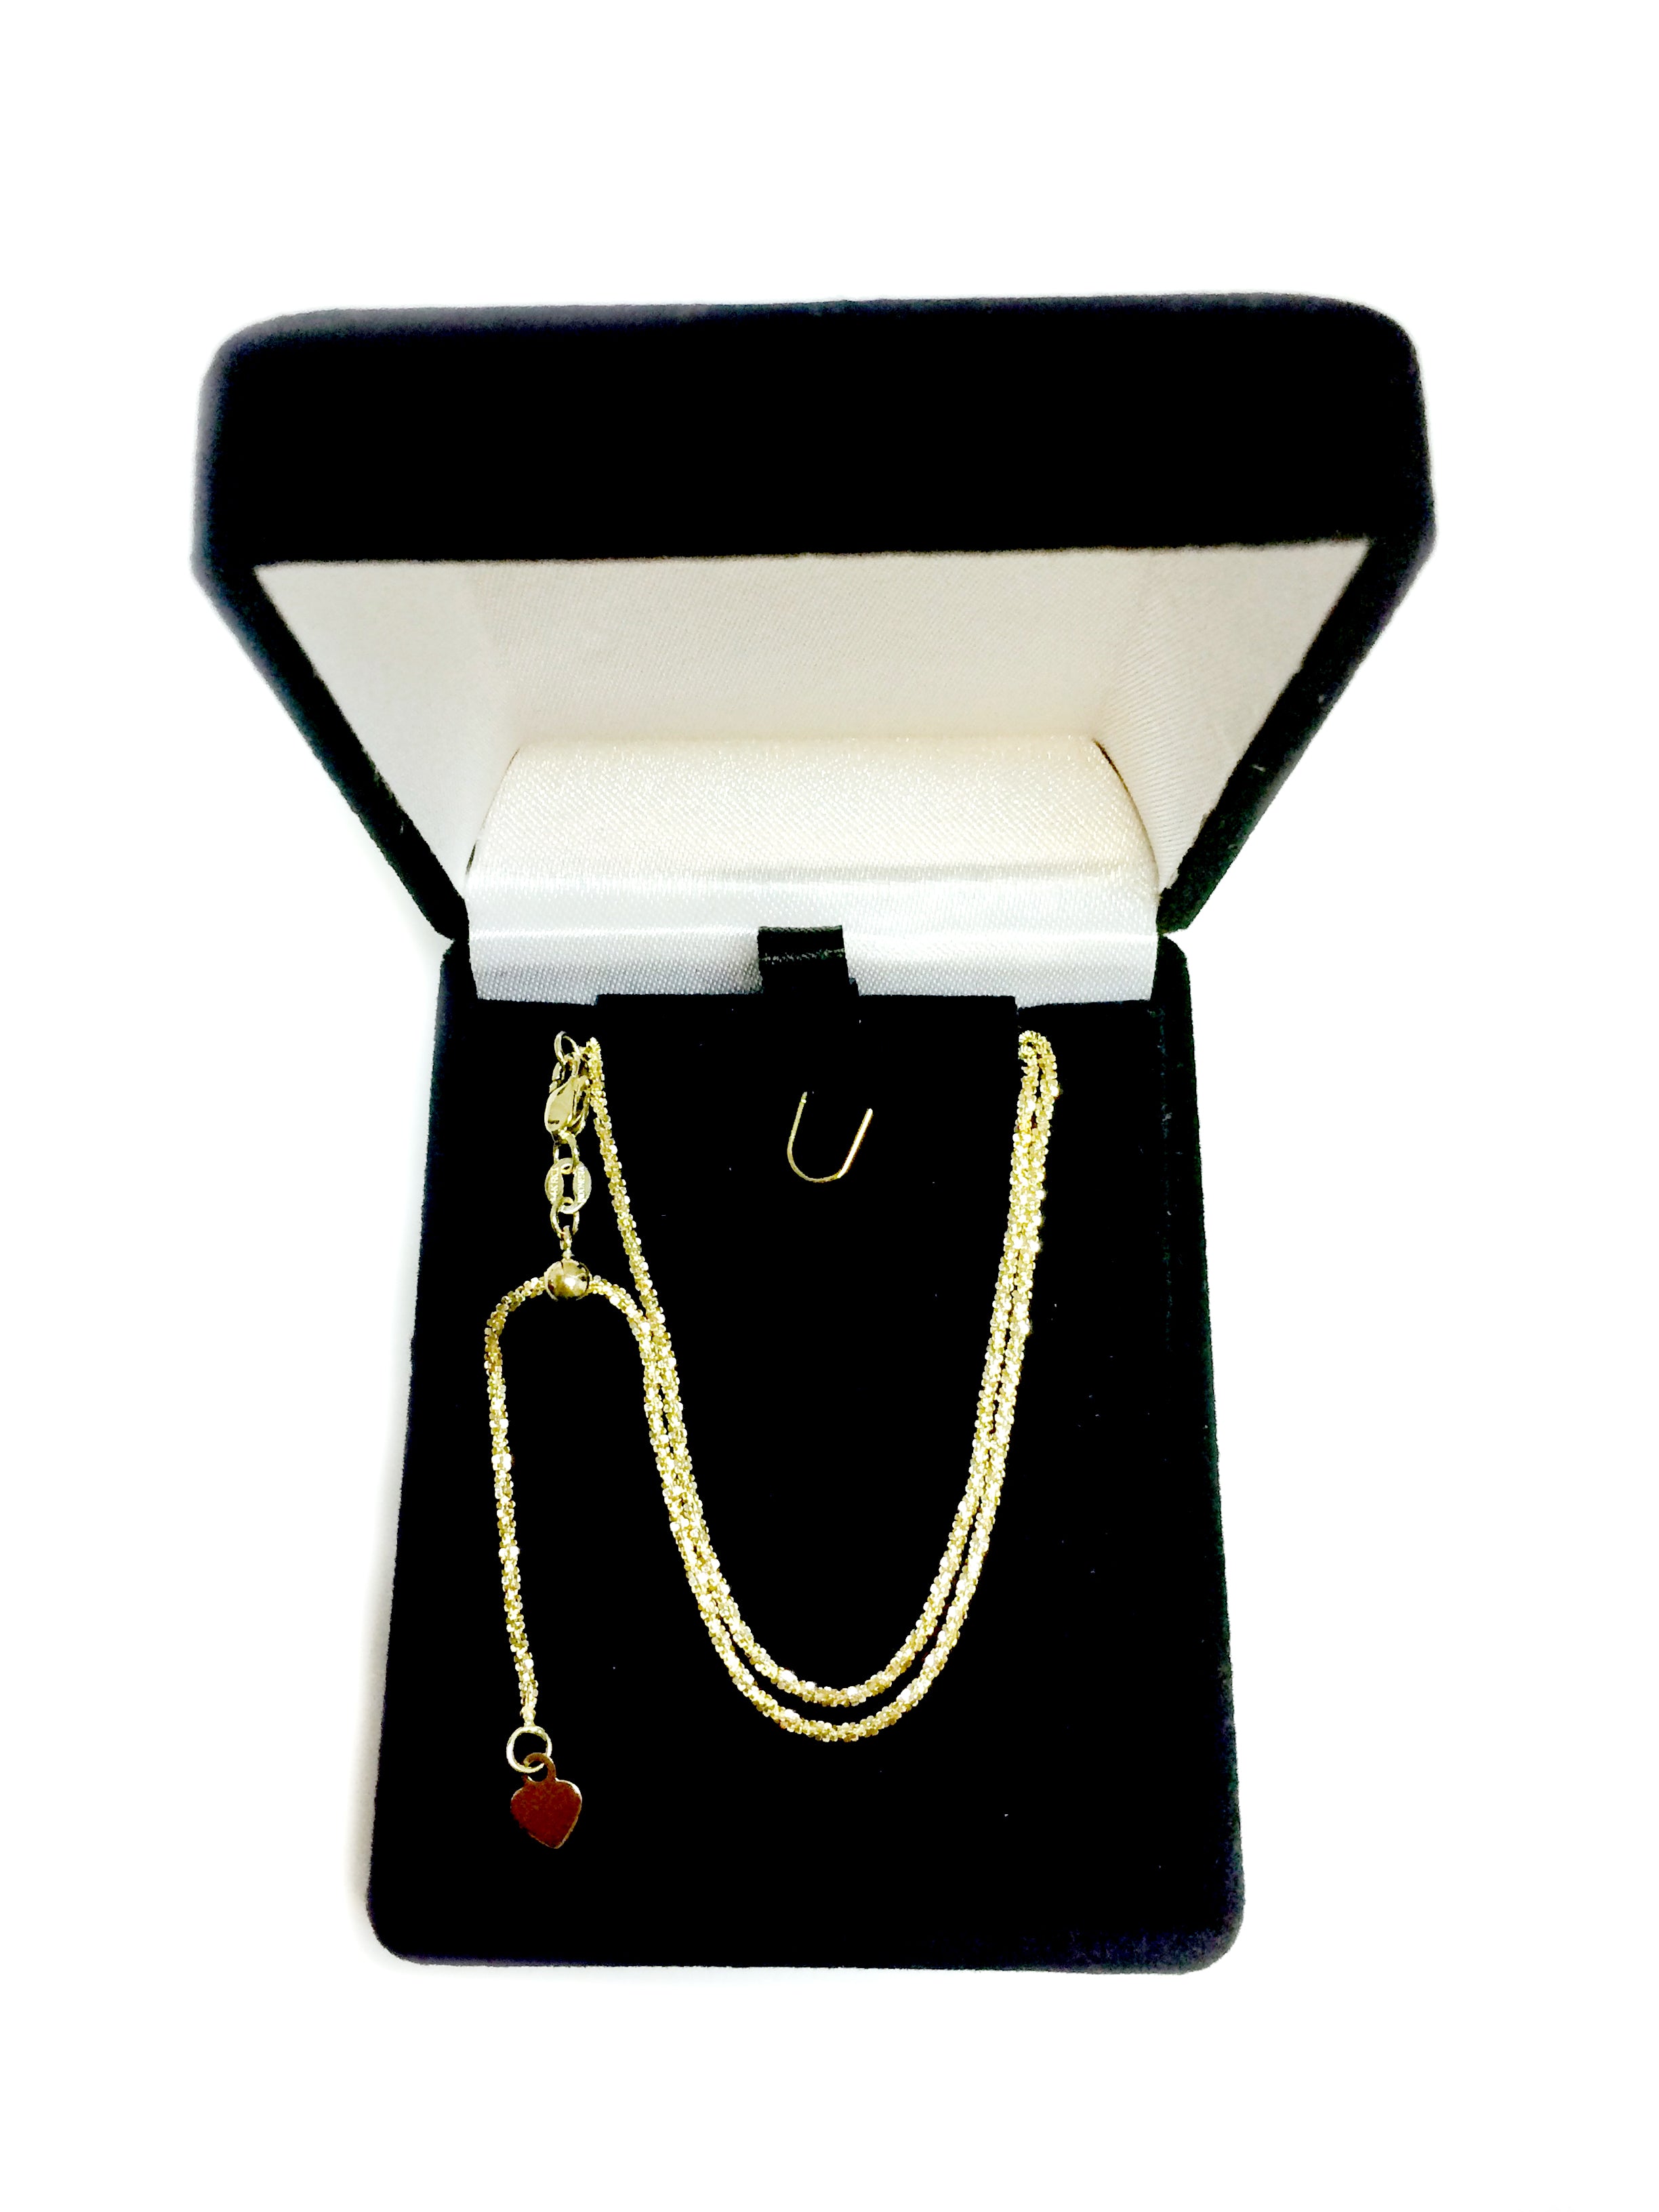 Collier chaîne à maillons scintillants réglable en or jaune 10 carats, 1,5 mm, 22 po, bijoux de créateurs fins pour hommes et femmes